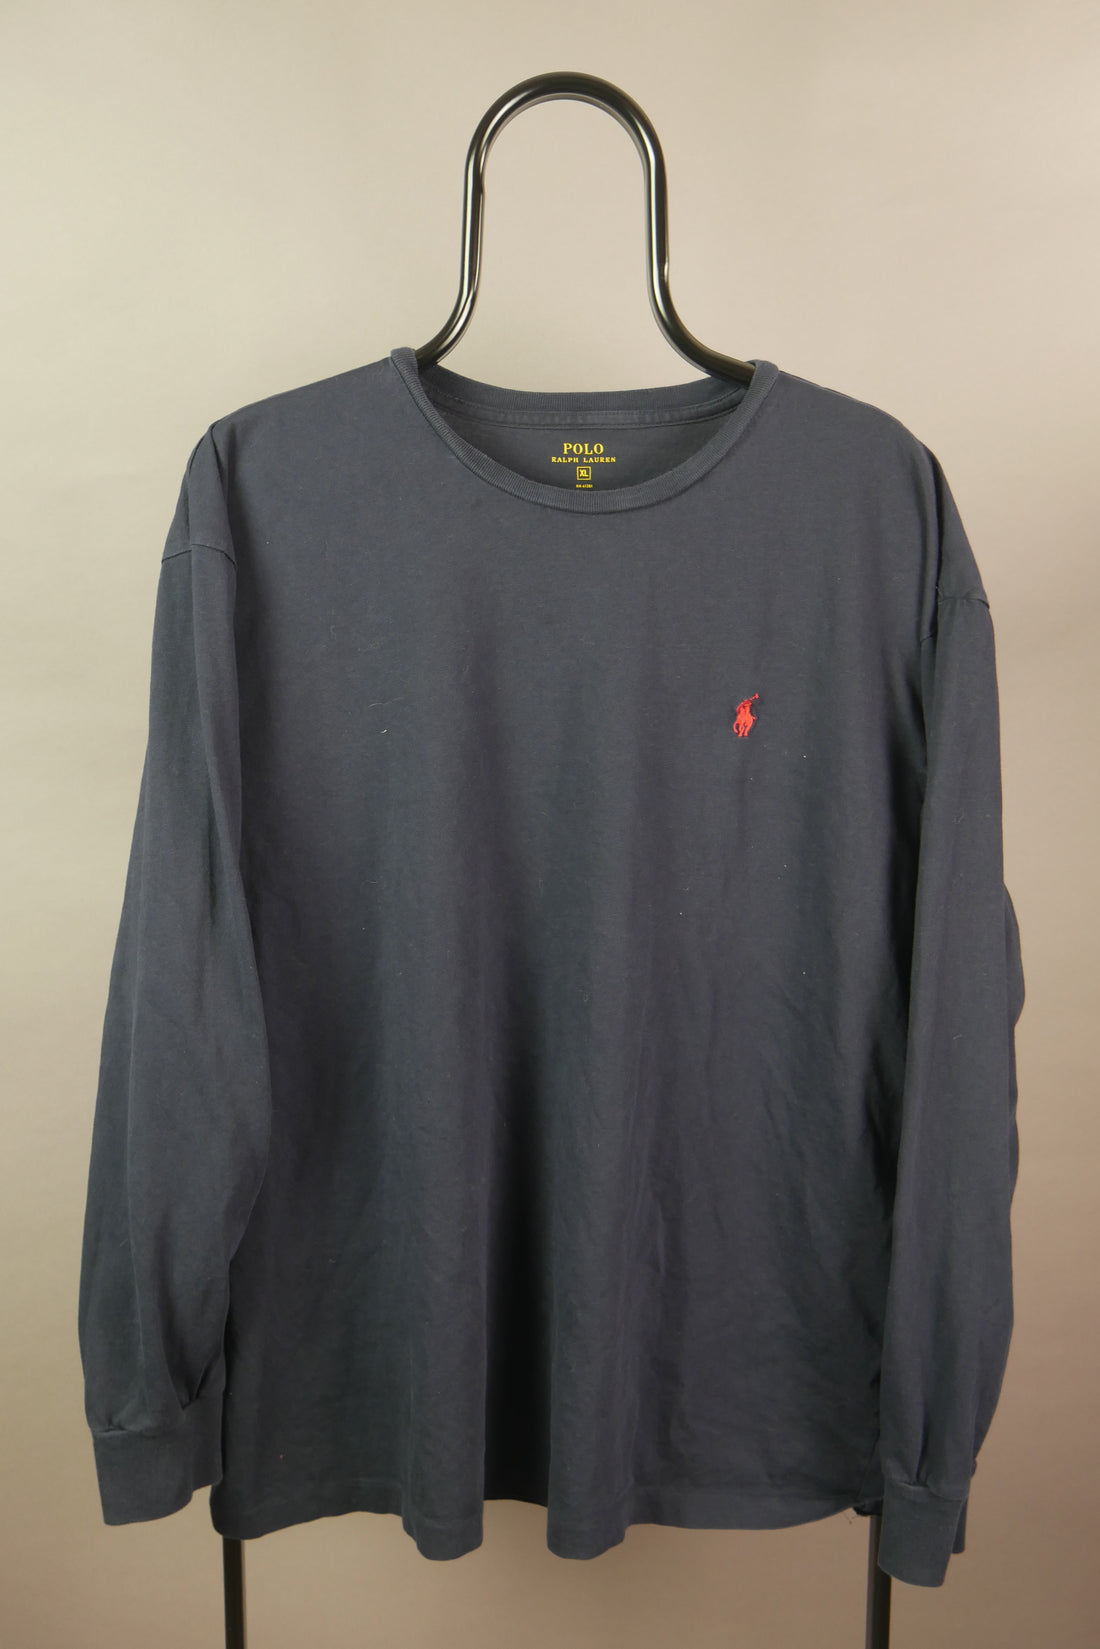 The Ralph Lauren Long Sleeve T-Shirt (XL)